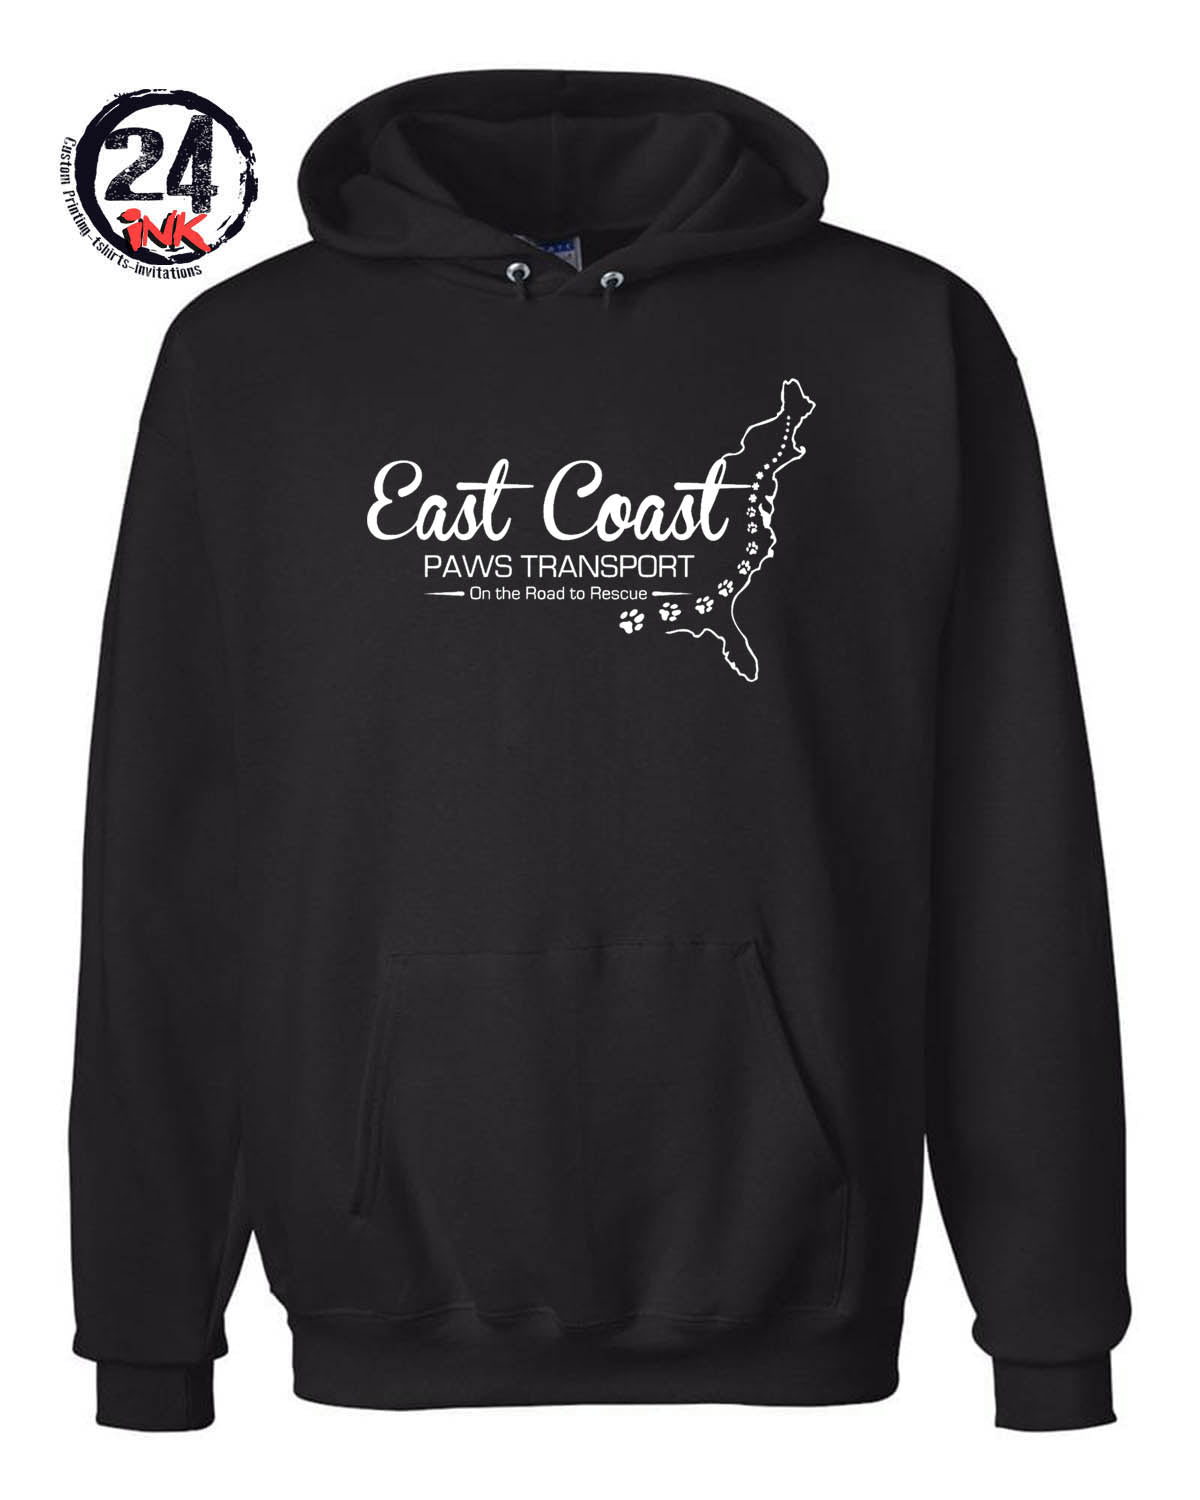 East Coast Paws Transport Hooded Sweatshirt